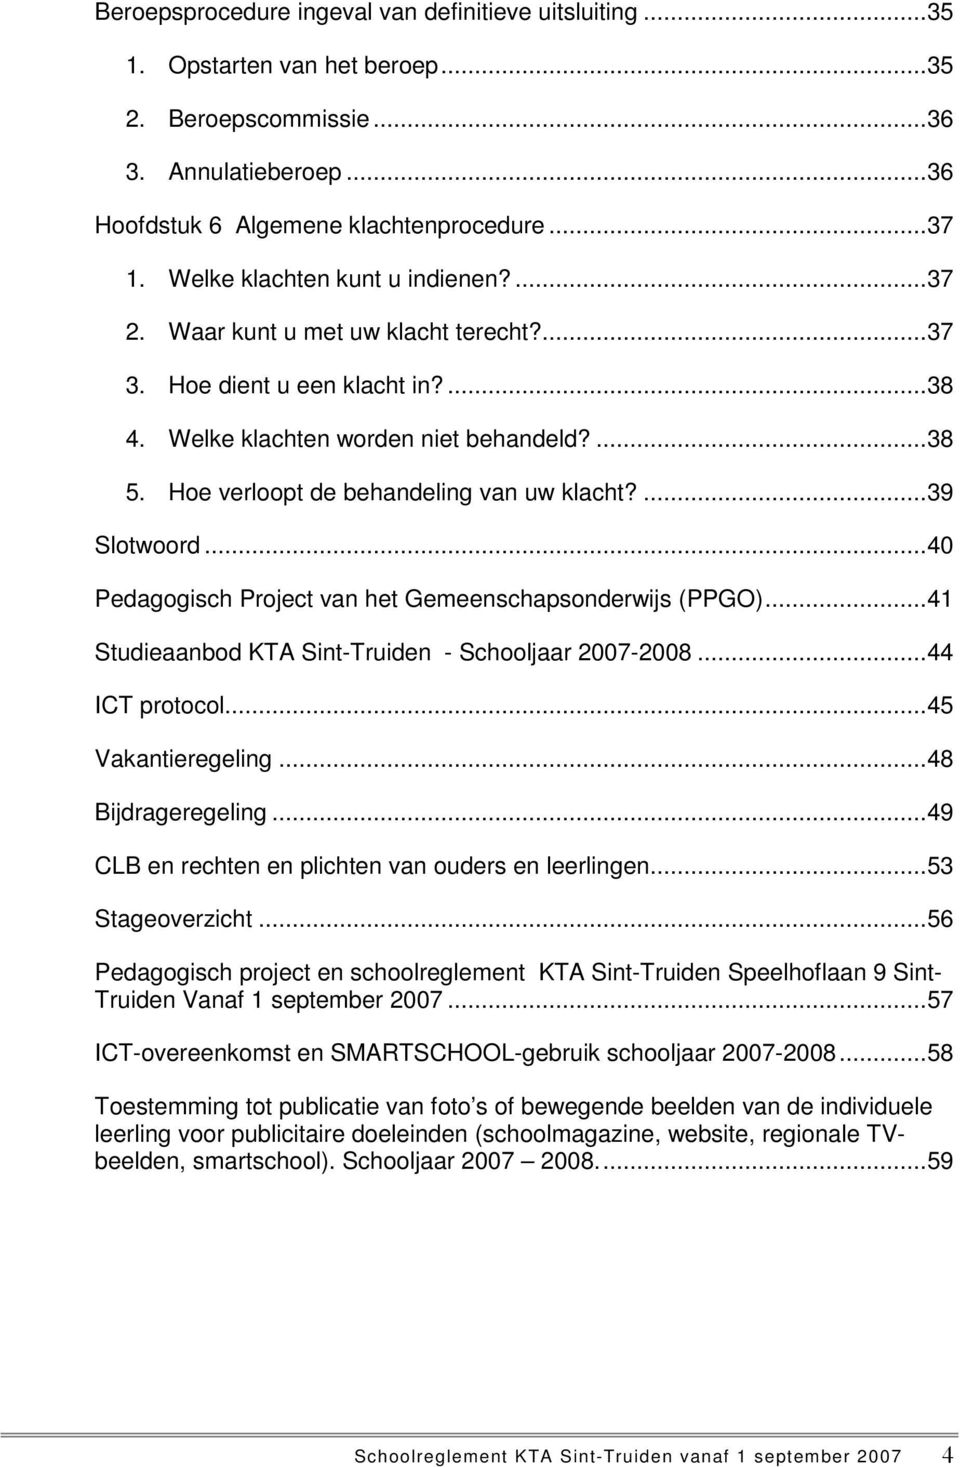 Hoe verloopt de behandeling van uw klacht?... 39 Slotwoord... 40 Pedagogisch Project van het Gemeenschapsonderwijs (PPGO)... 41 Studieaanbod KTA Sint-Truiden - Schooljaar 2007-2008... 44 ICT protocol.